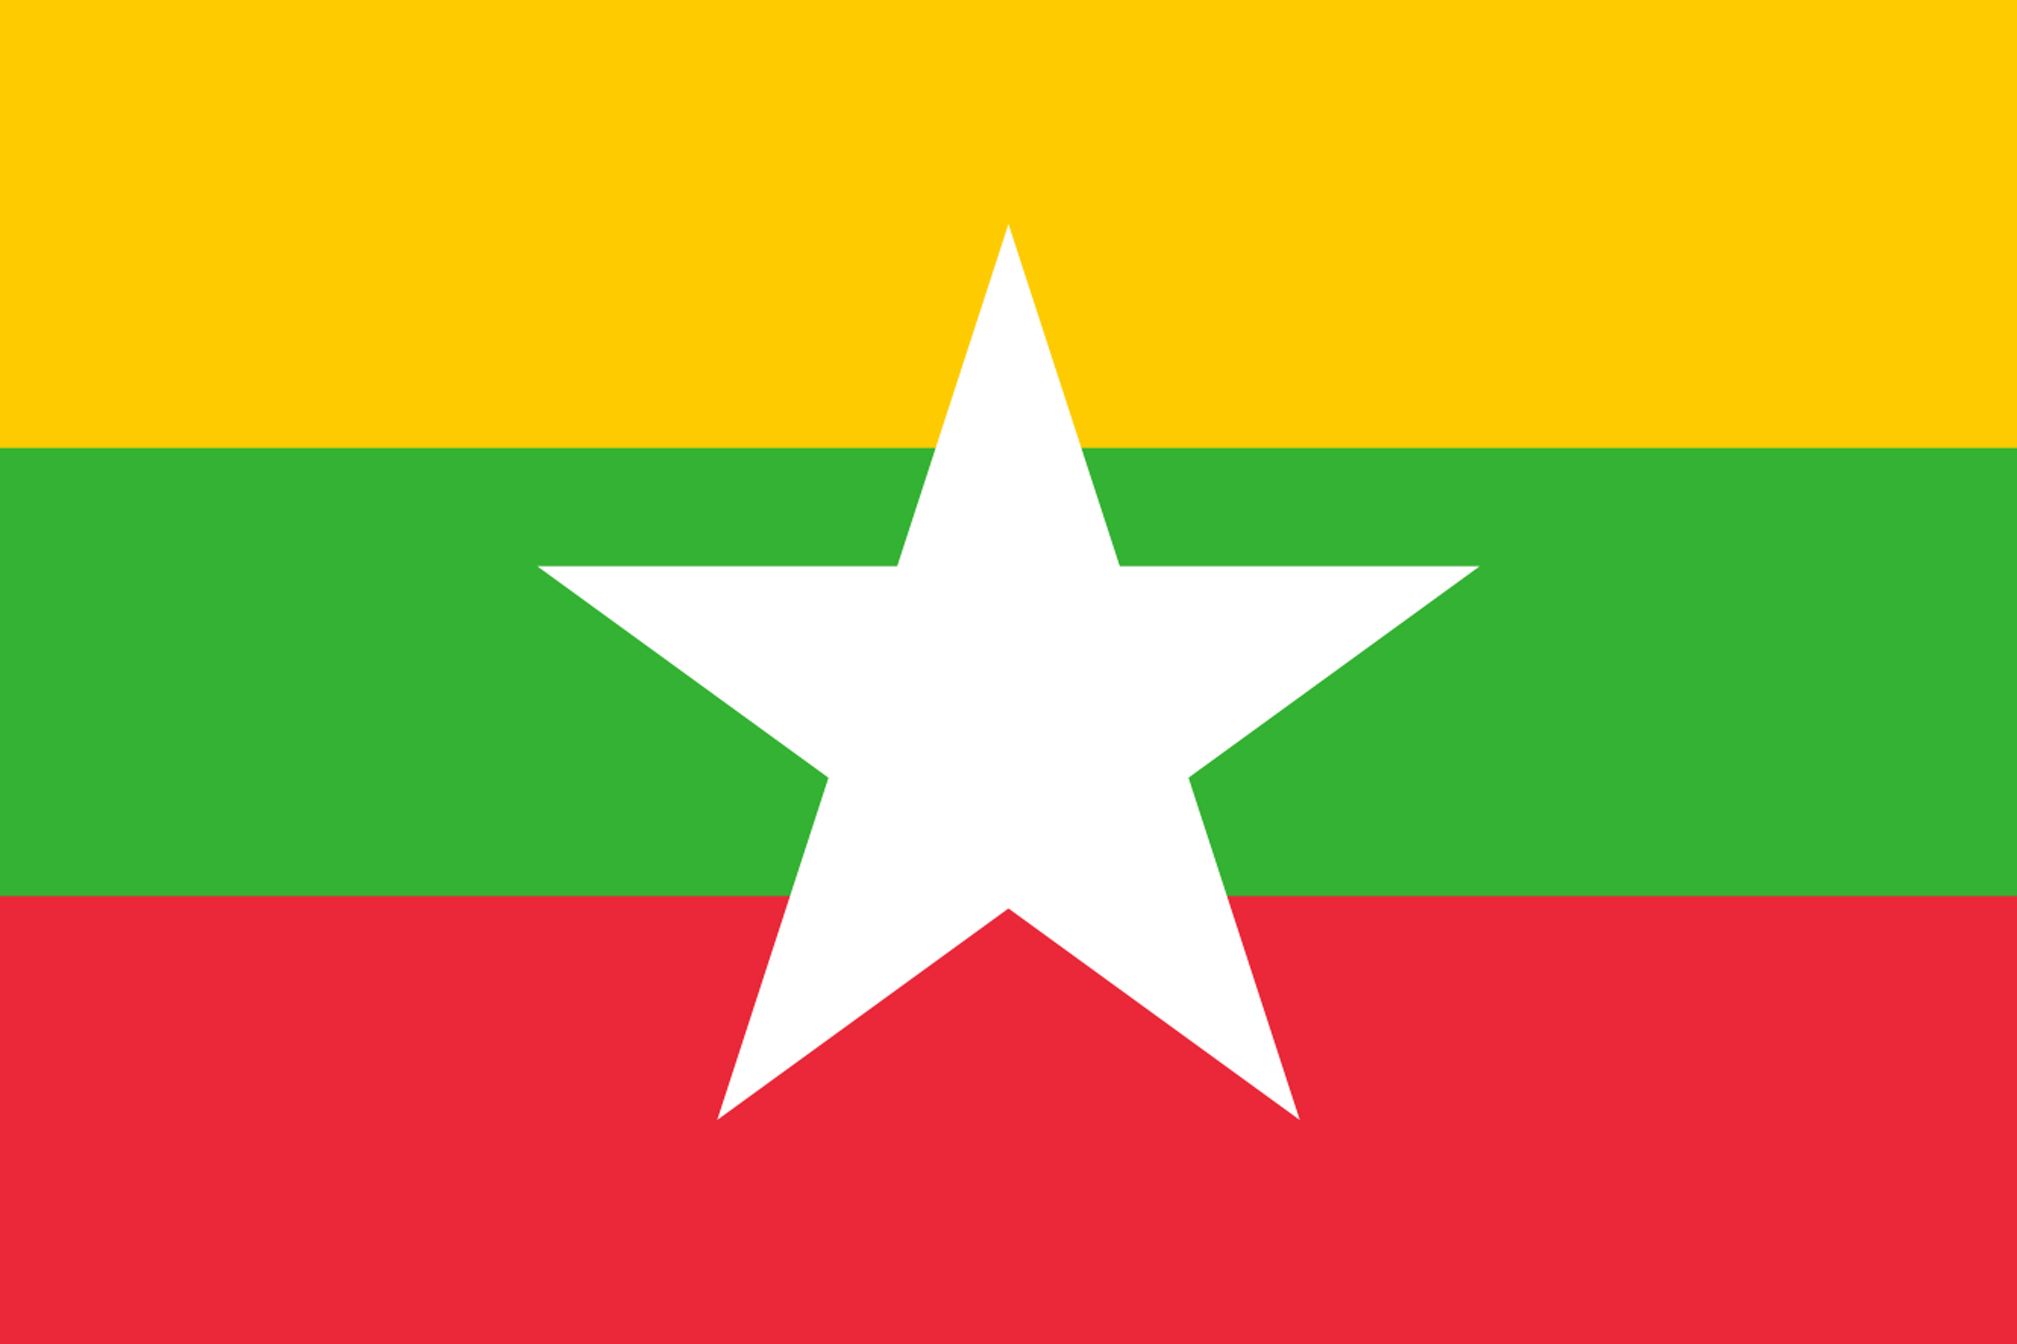 Burmese/Myanmar